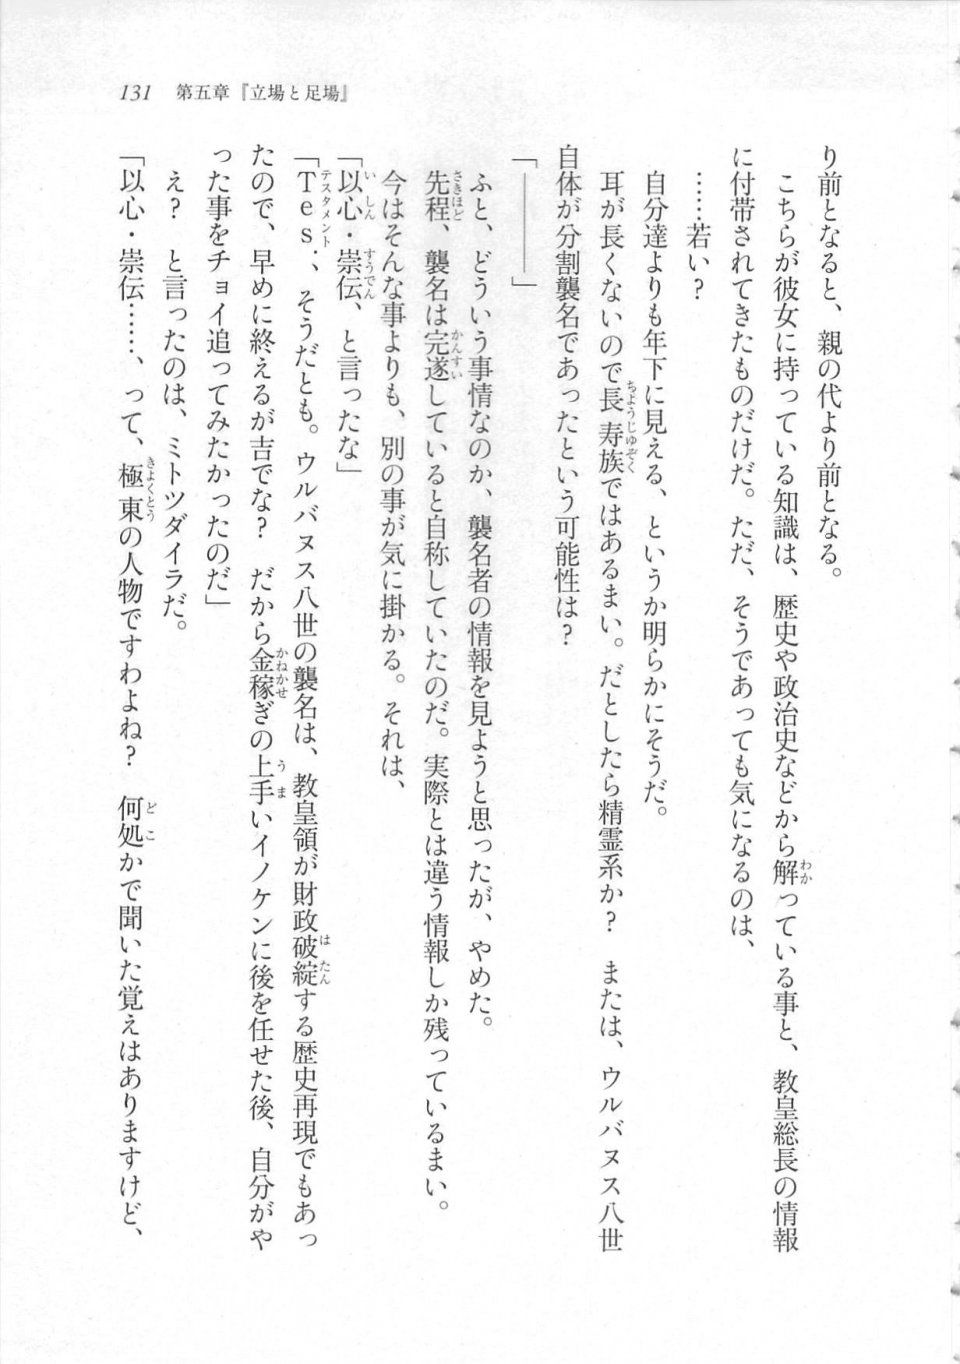 Kyoukai Senjou no Horizon LN Sidestory Vol 3 - Photo #135